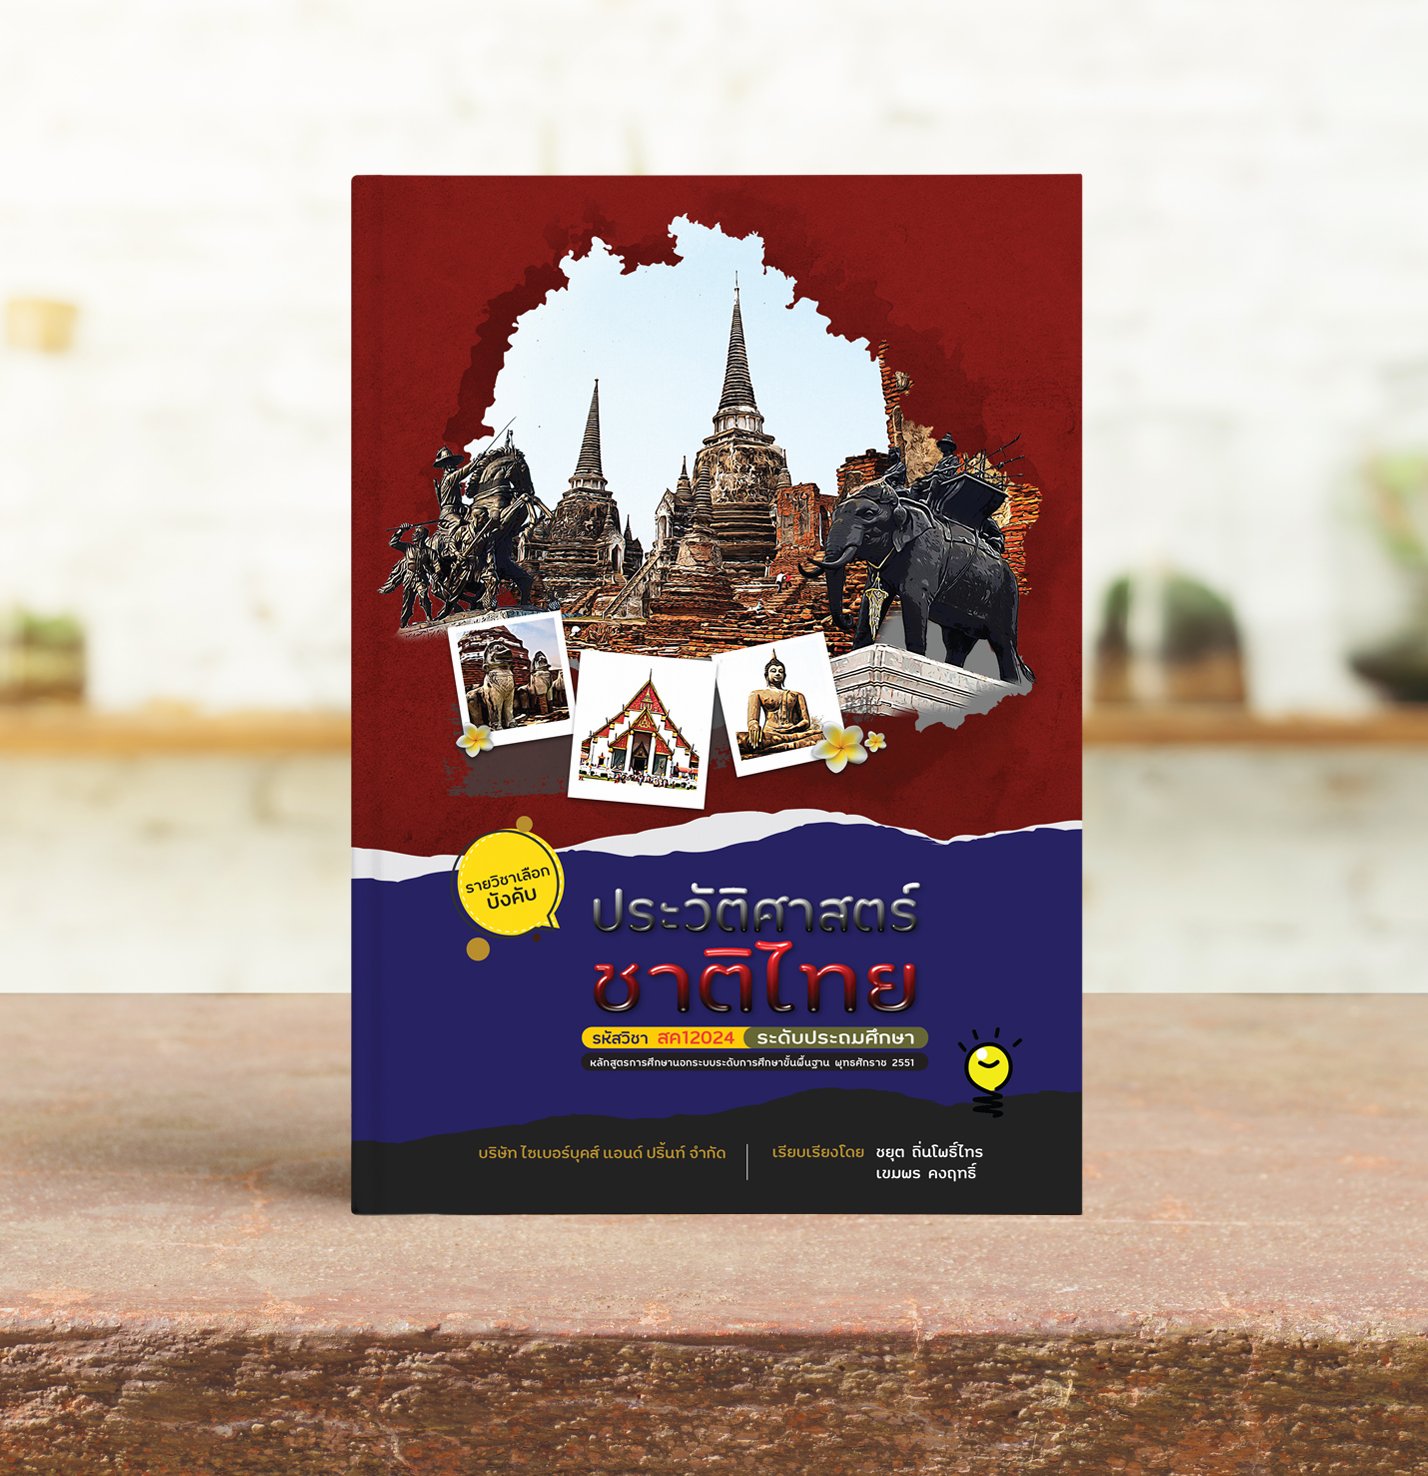 วิชา ประวัติศาสตร์ชาติไทย : ประถม